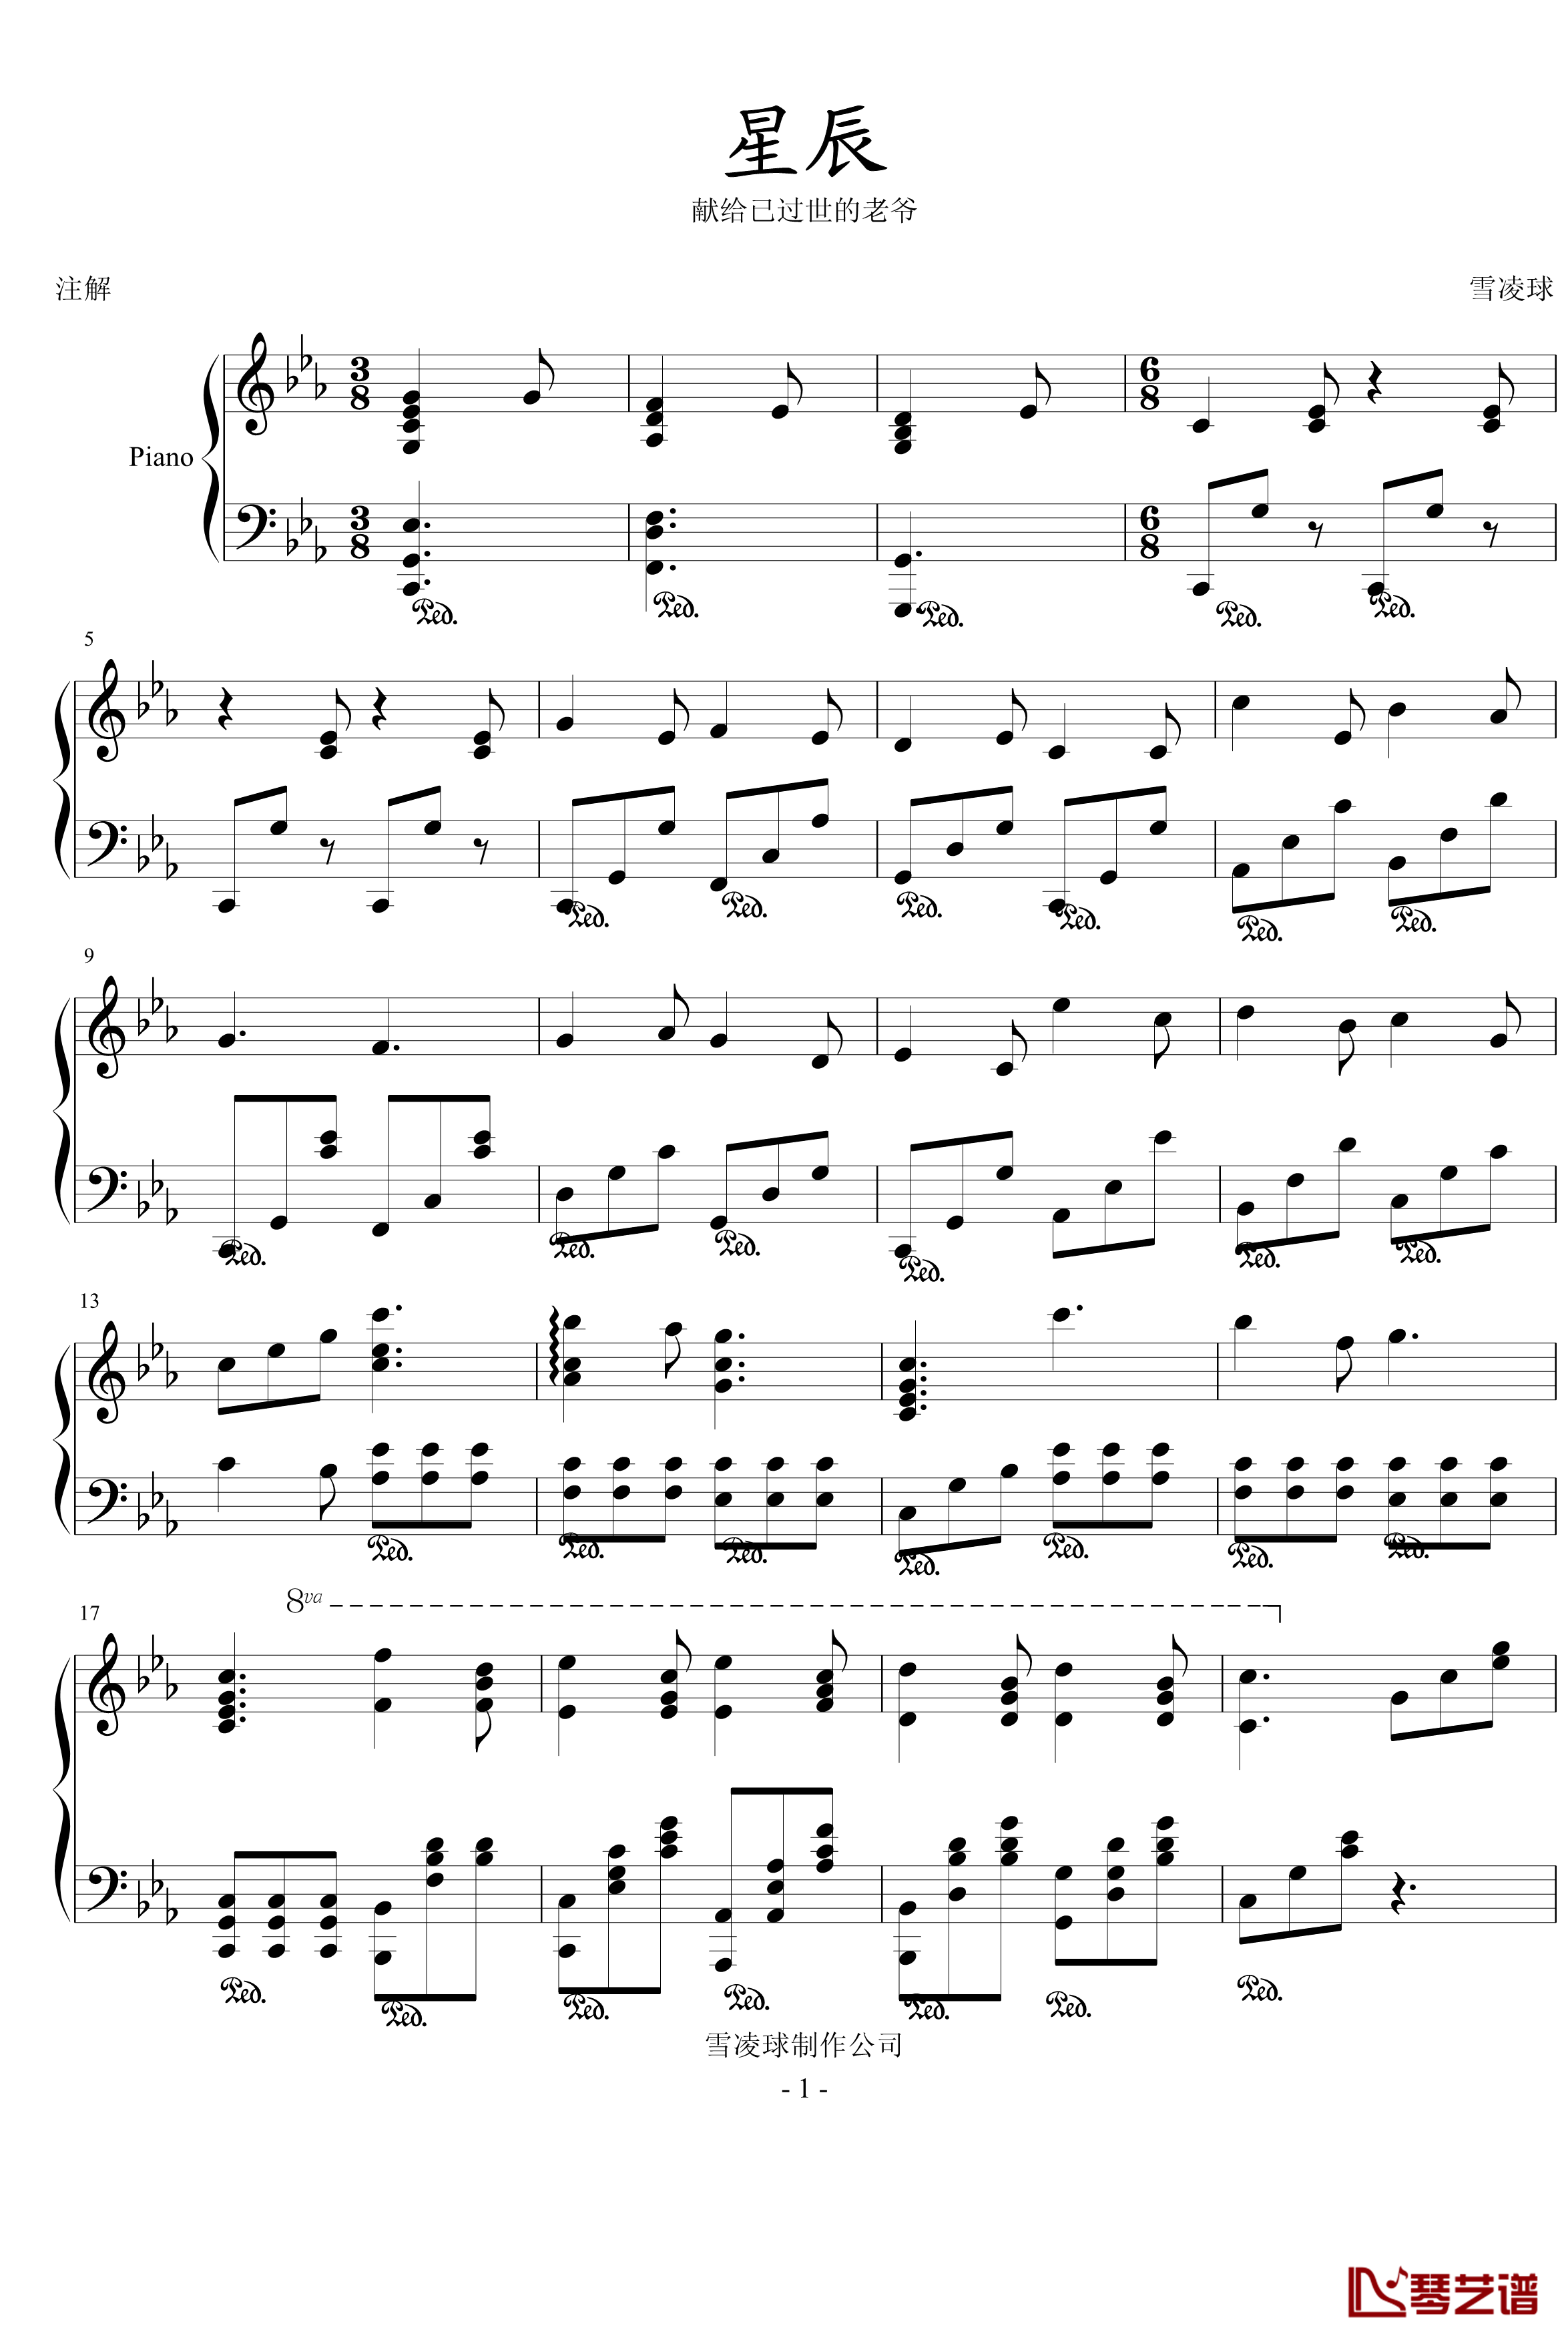 星辰钢琴谱-199086hxy1